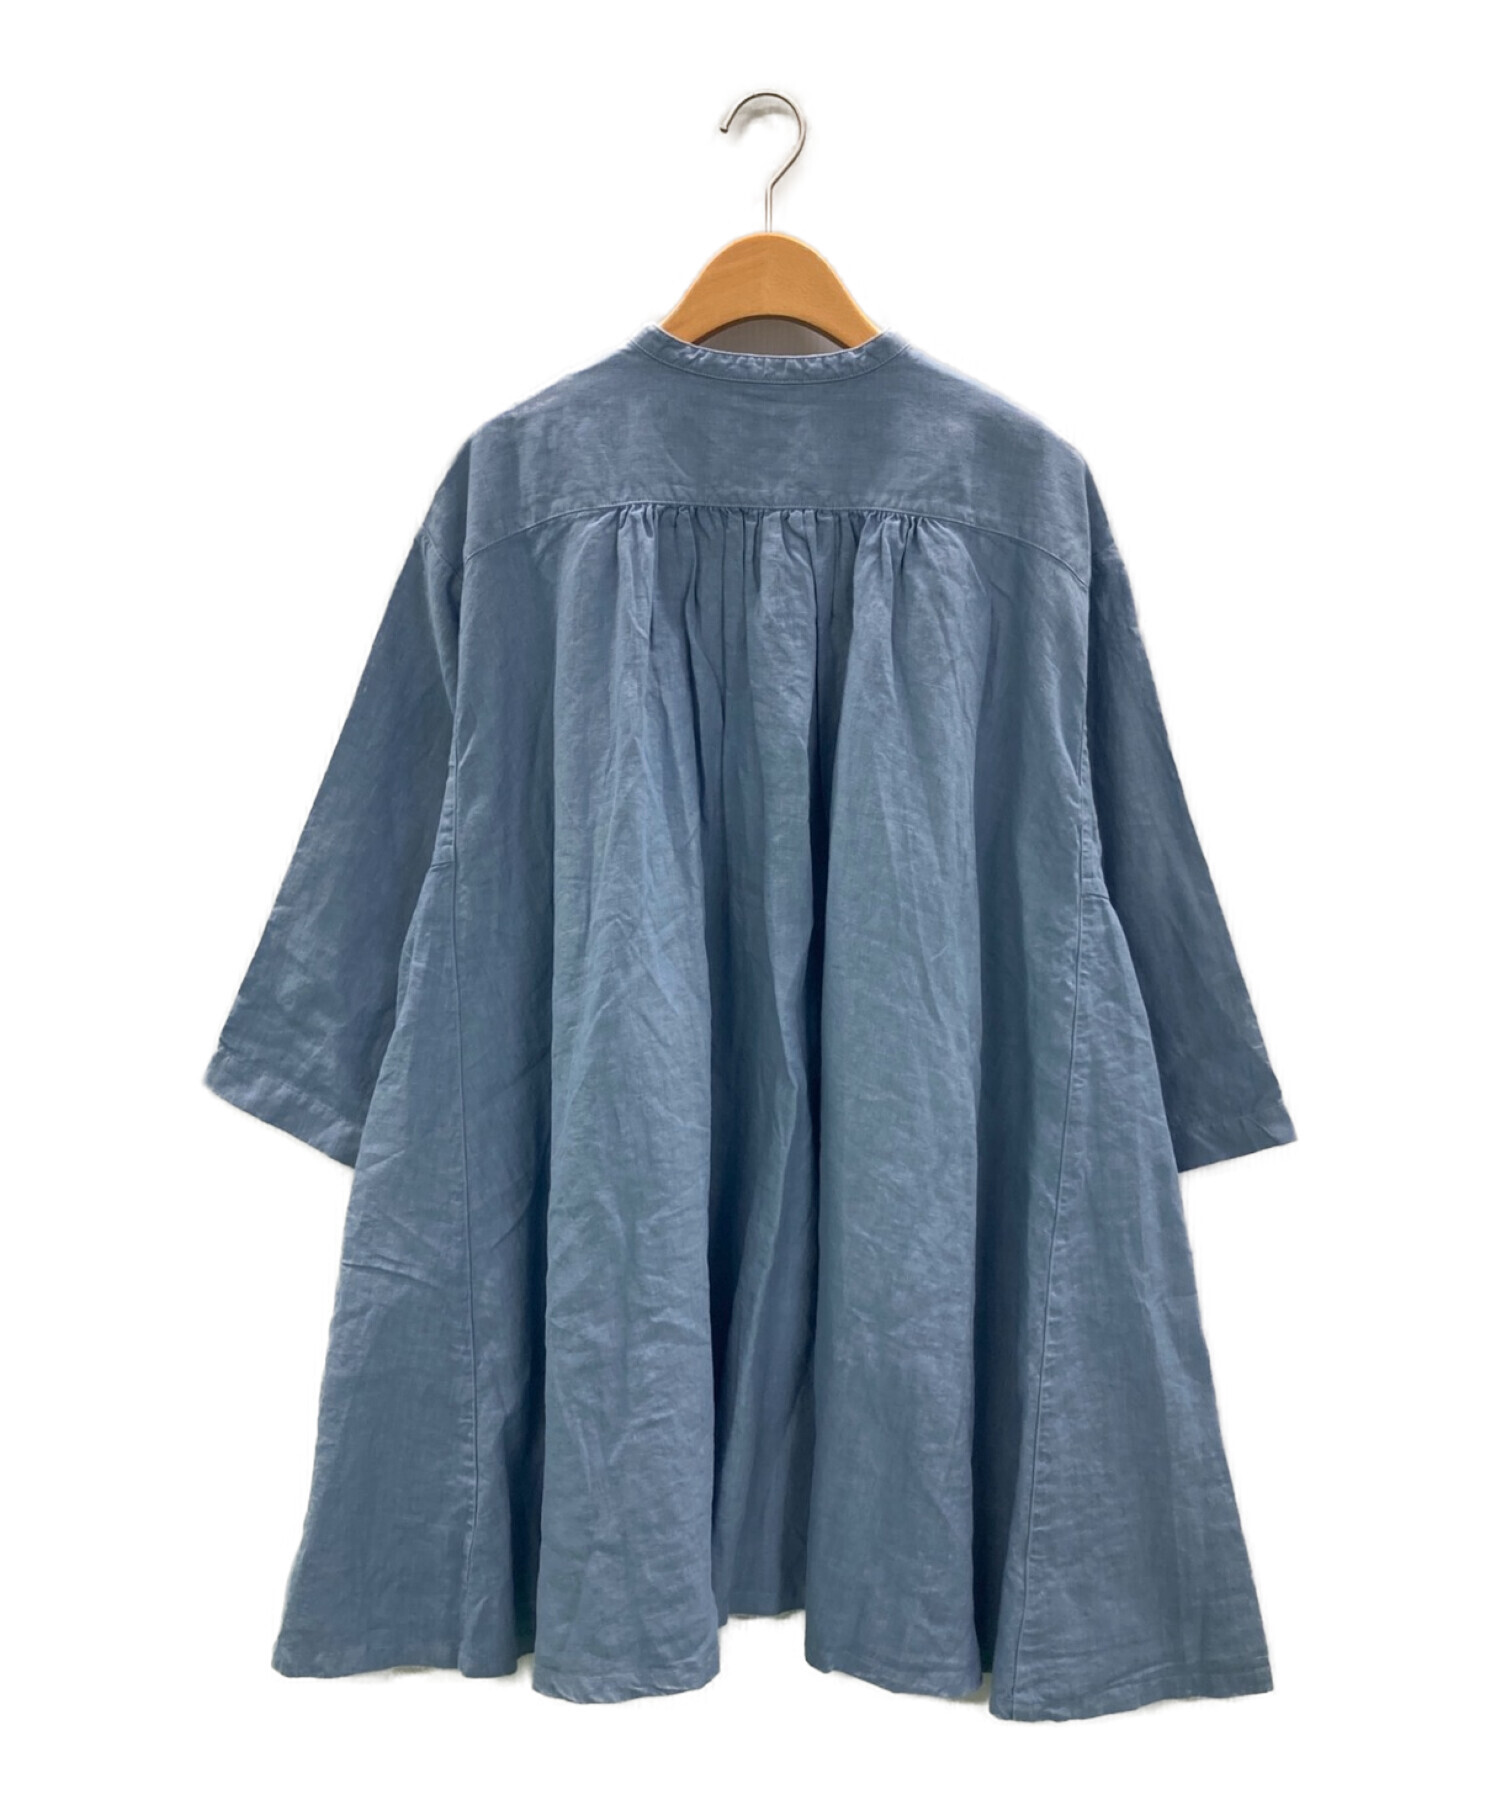 nest robe（ネストローブ）| リネン天然染めチュニックブラウス